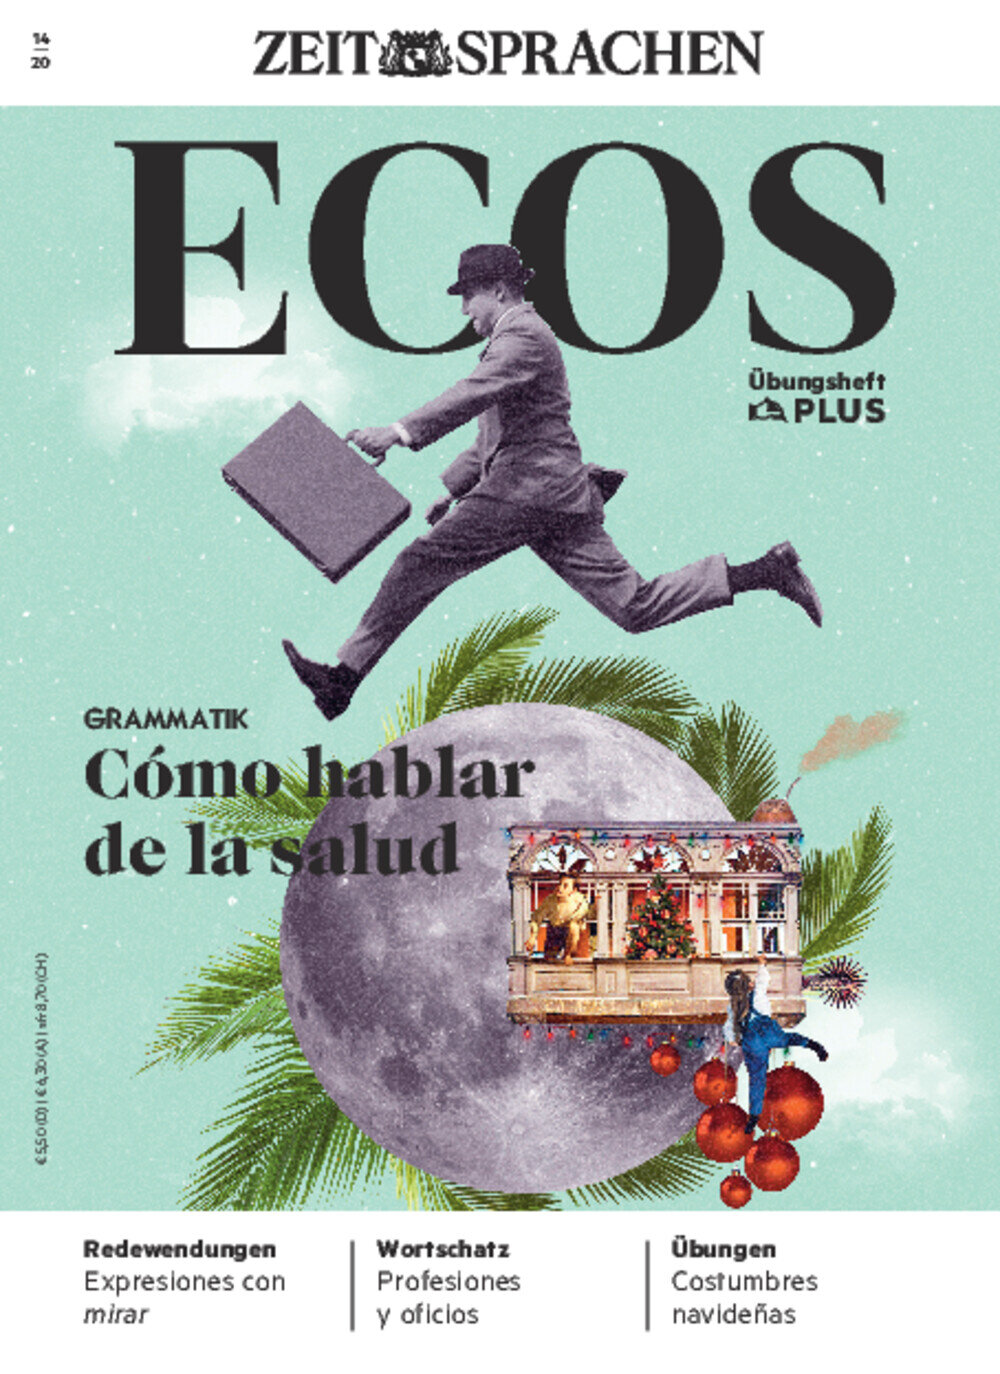 Ecos Übungsheft Digital 14/2020